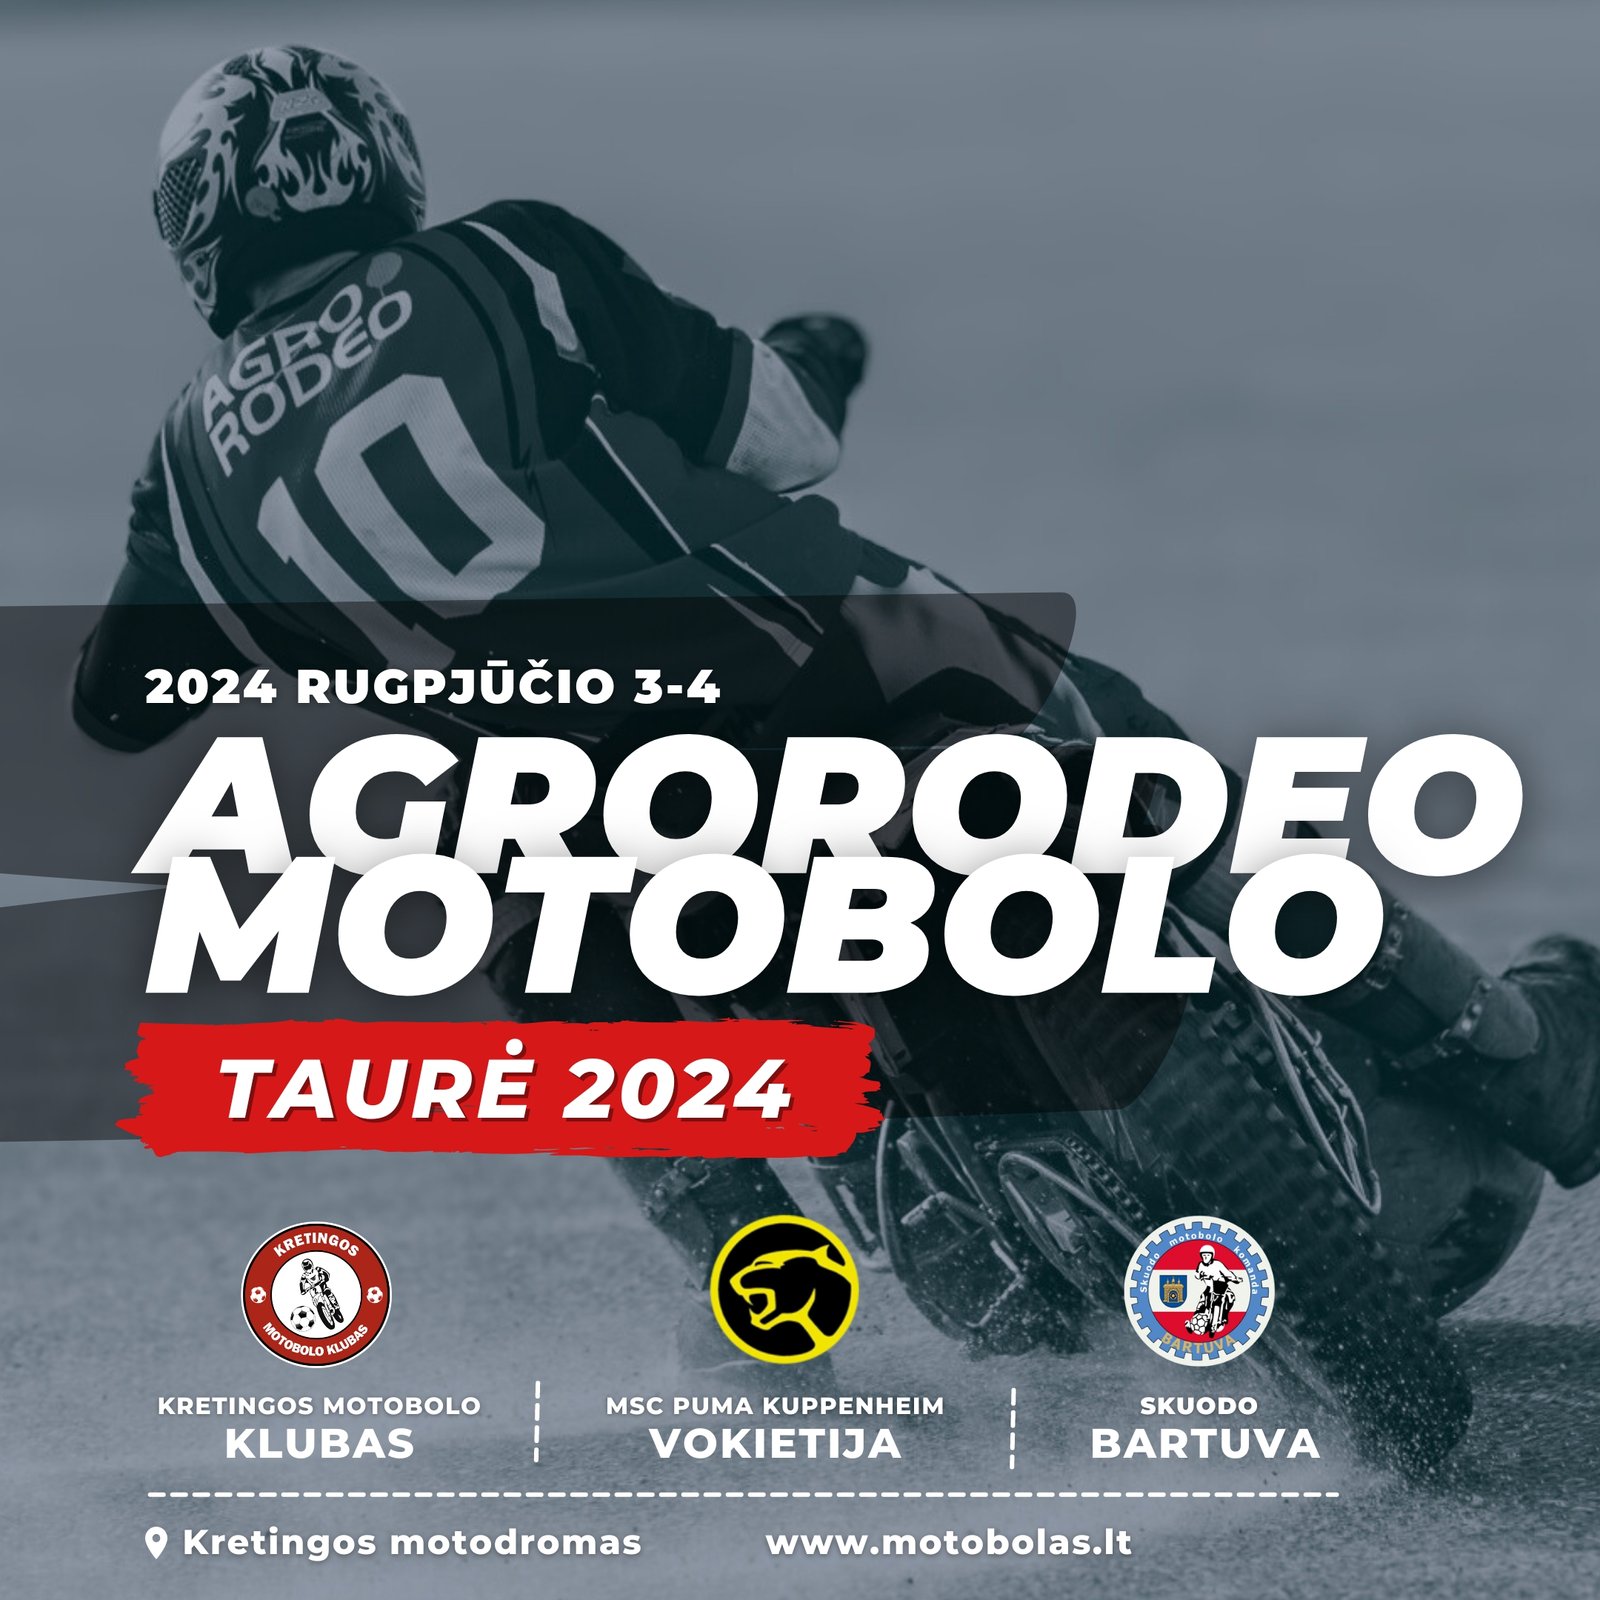 Rugpjūčio 3-4 d. Kretingoje vyks “Agrorodeo Motobolo Taurė 2024”